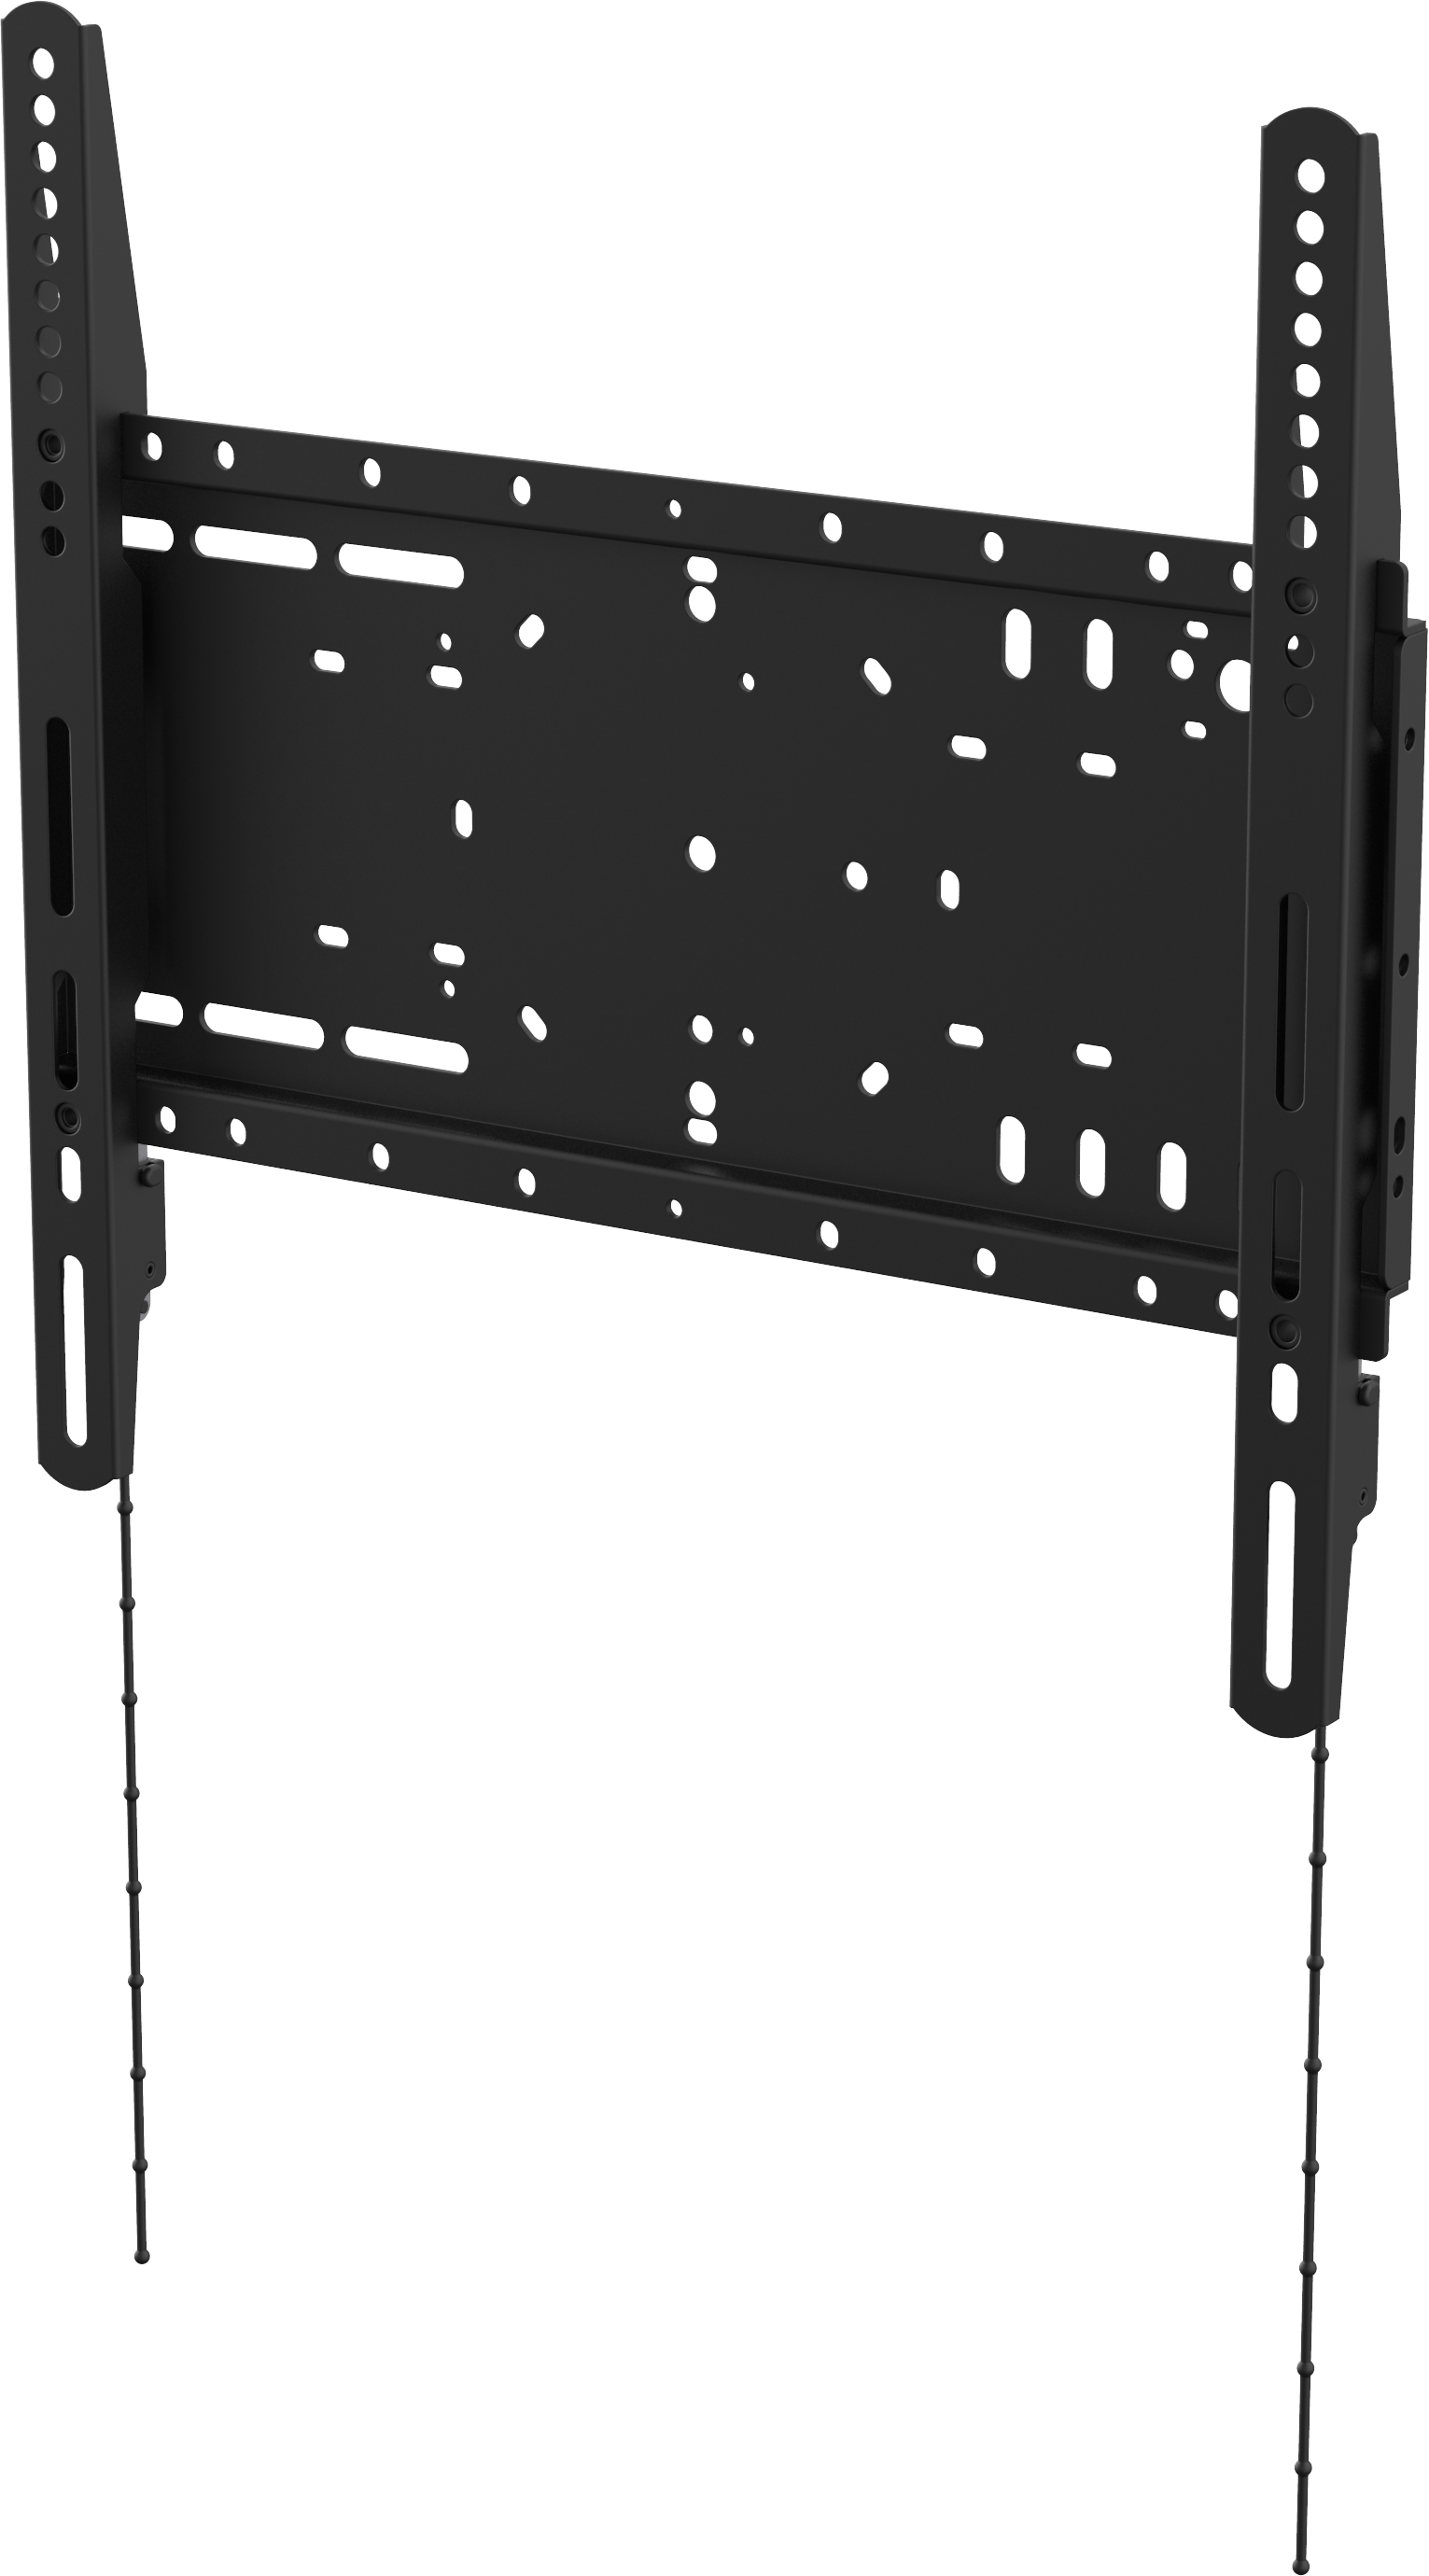 An image showing Sistema di montaggio a parete per schermi piatti per carichi pesanti 400 × 400